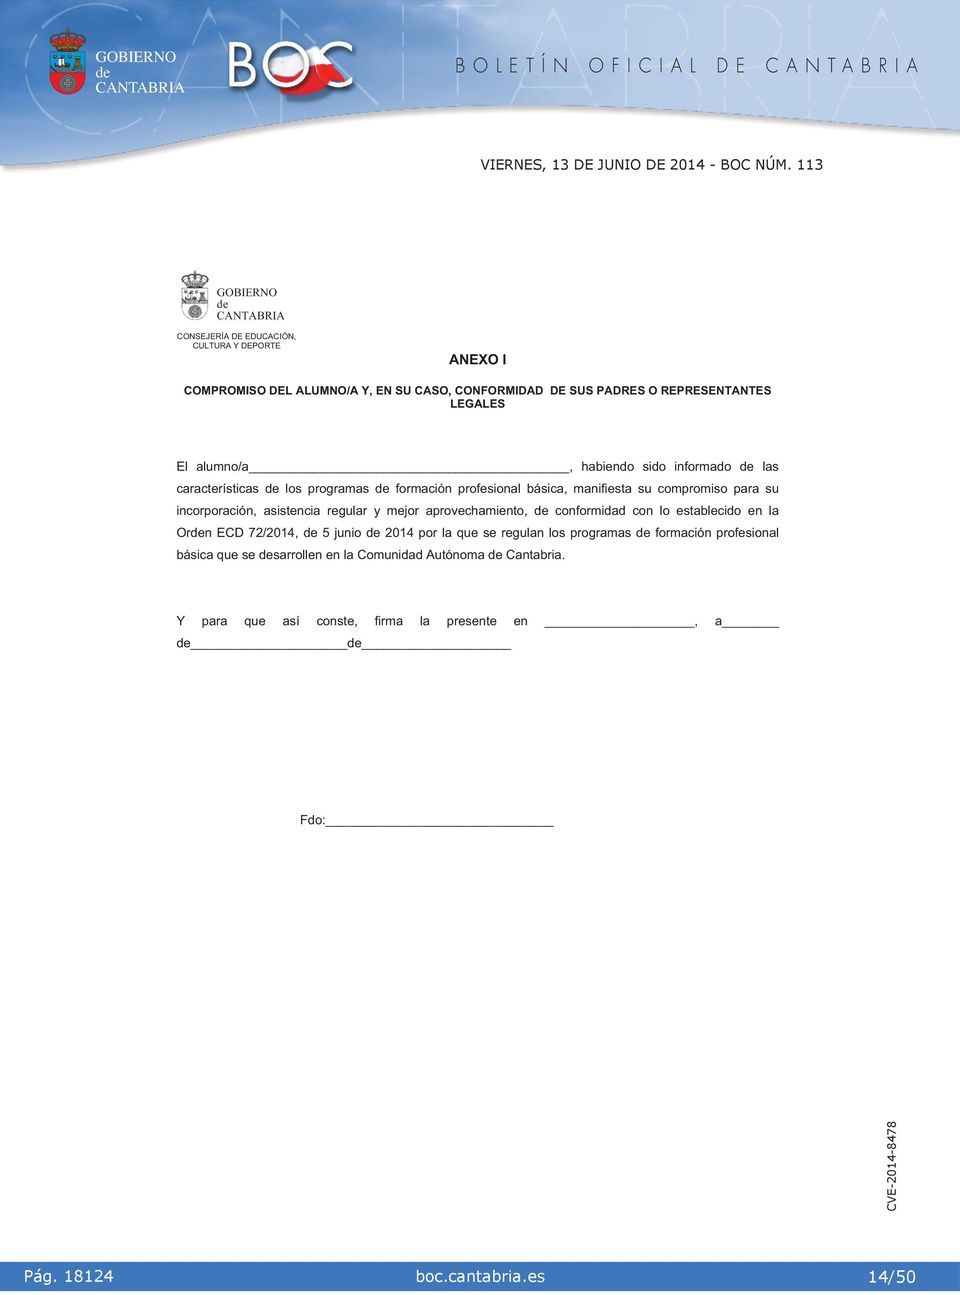 ncorporacón, asstenca regular y mejor aprovechamento, conformdad con lo establecdo en la Orn ECD 72/2014, 5 juno 2014 por la que se regulan los